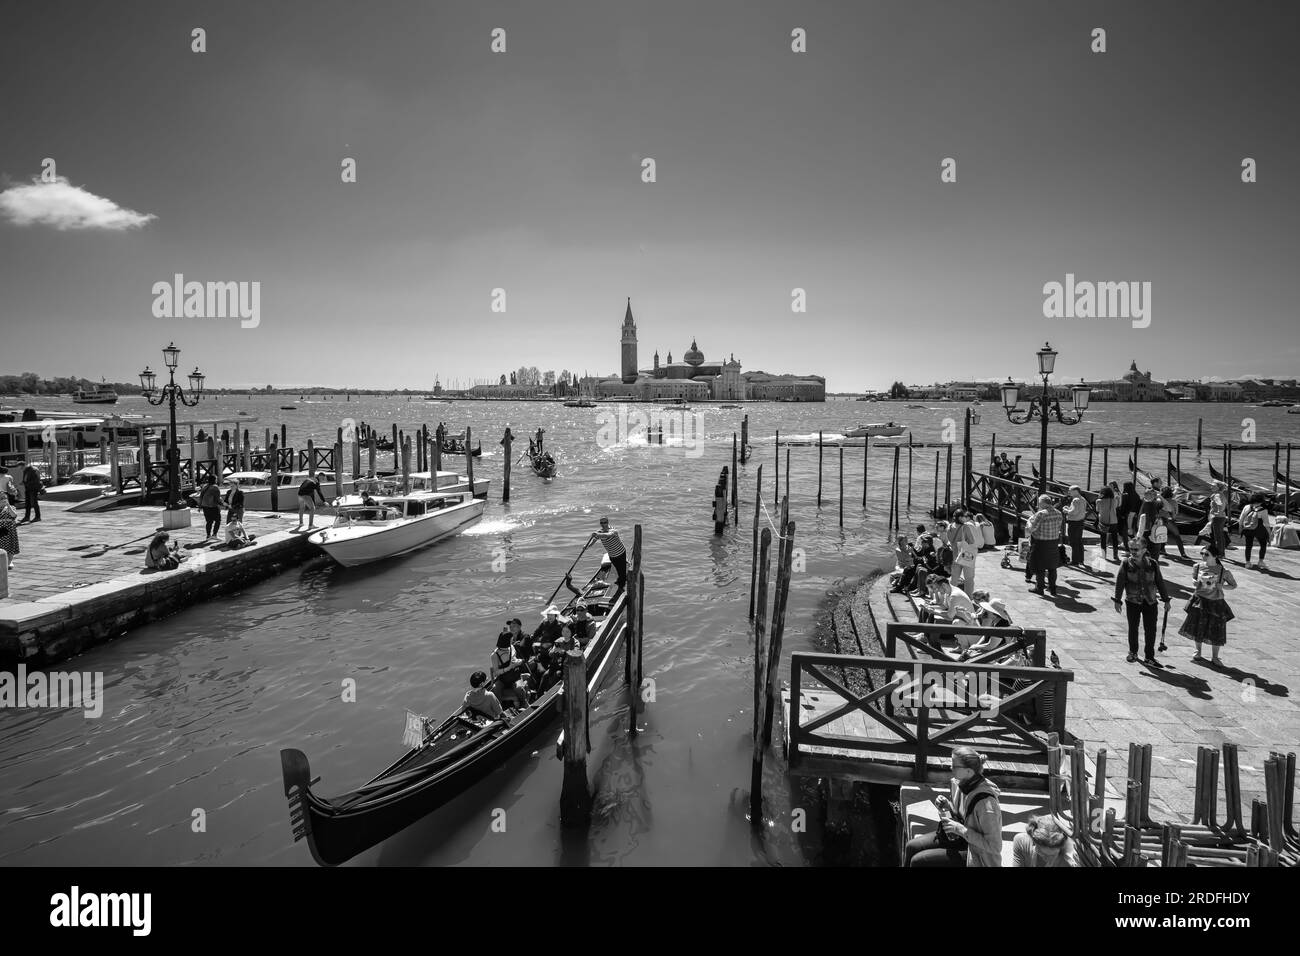 Venise, Italie - 27 avril 2019 : touristes à Venise Italie profiter d'une belle journée en noir et blanc Banque D'Images